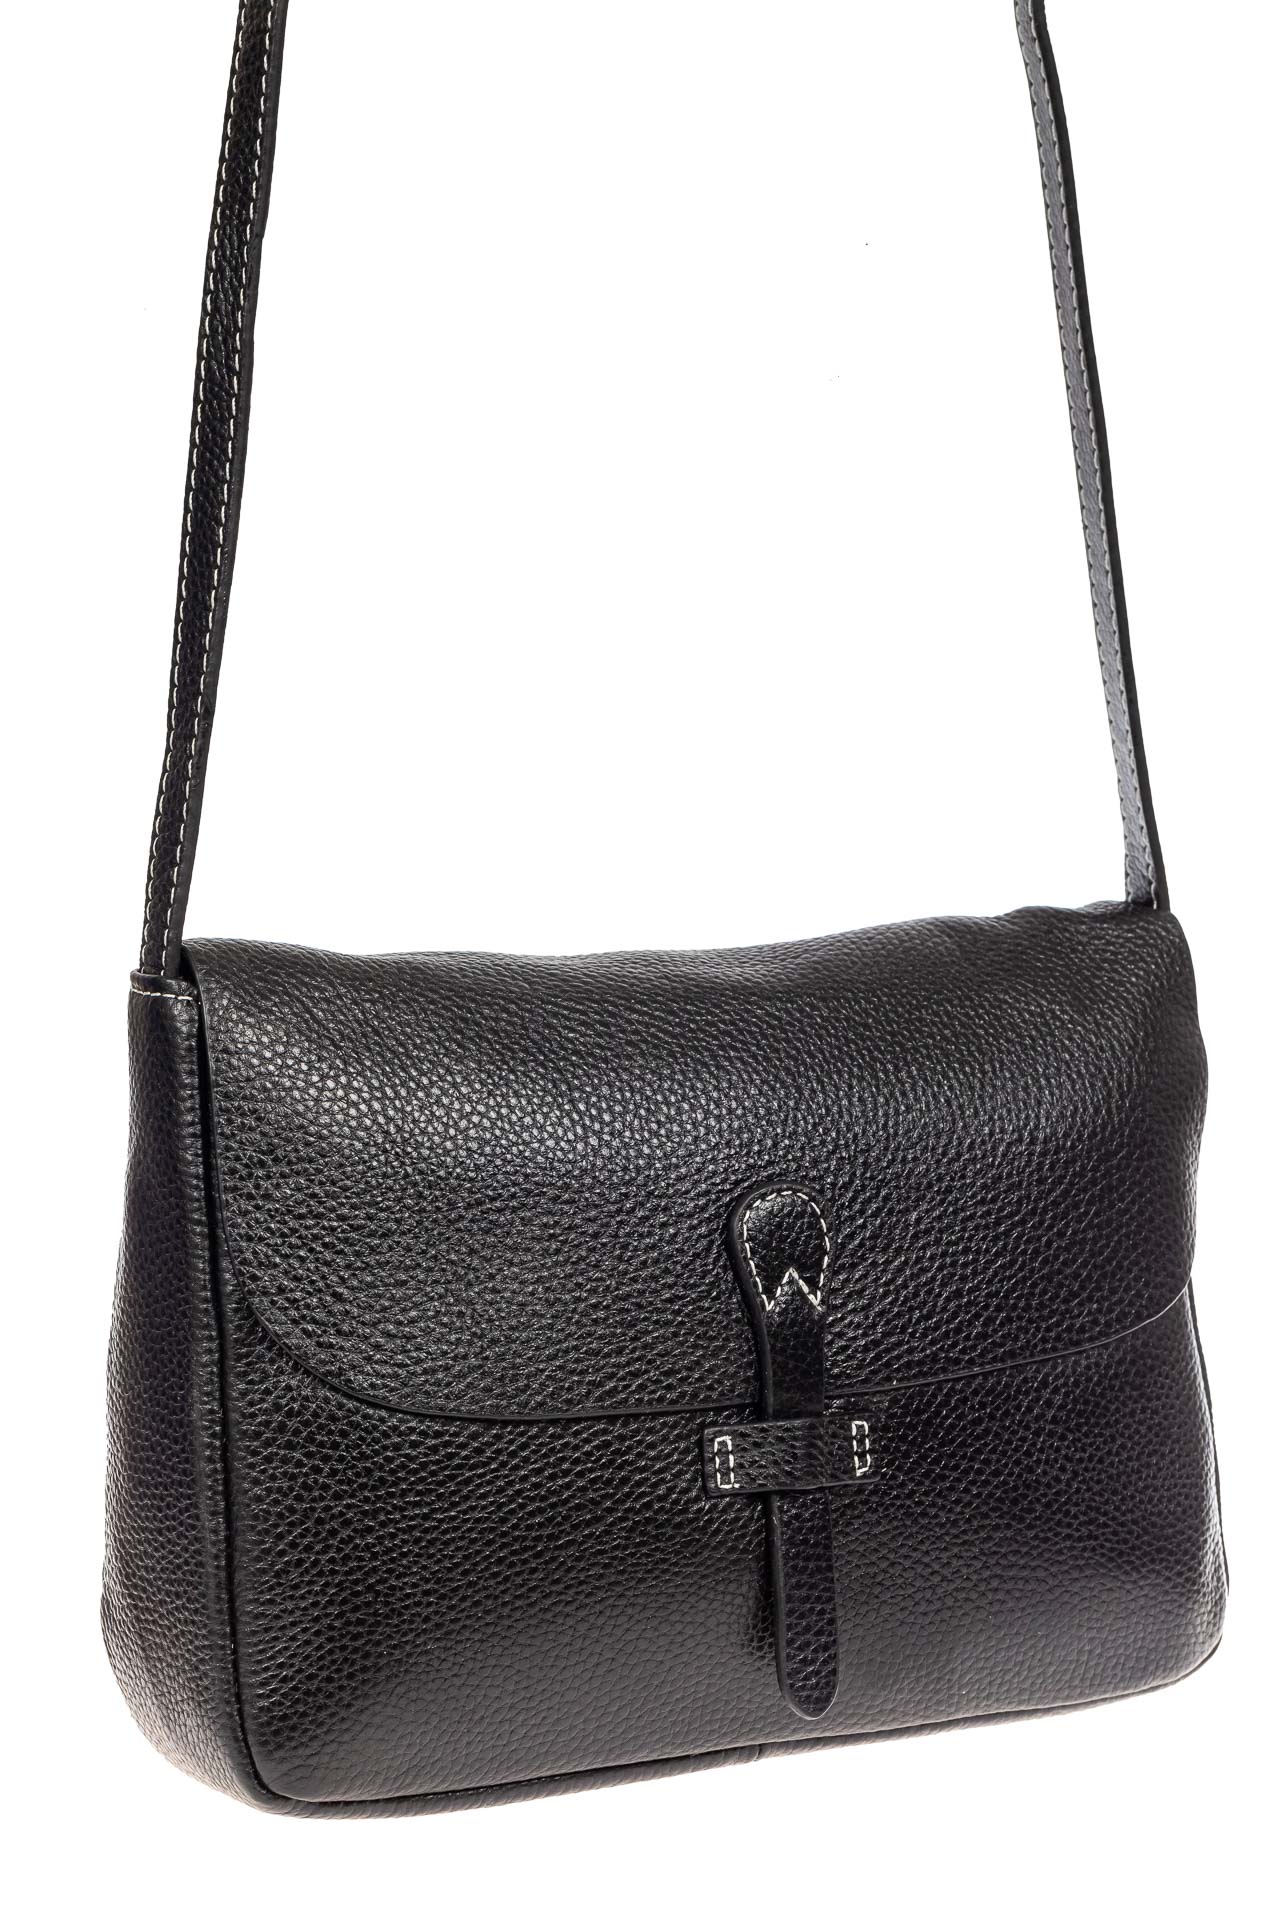 Женская сумка-мессенджер из натуральной кожи, цвет чёрный